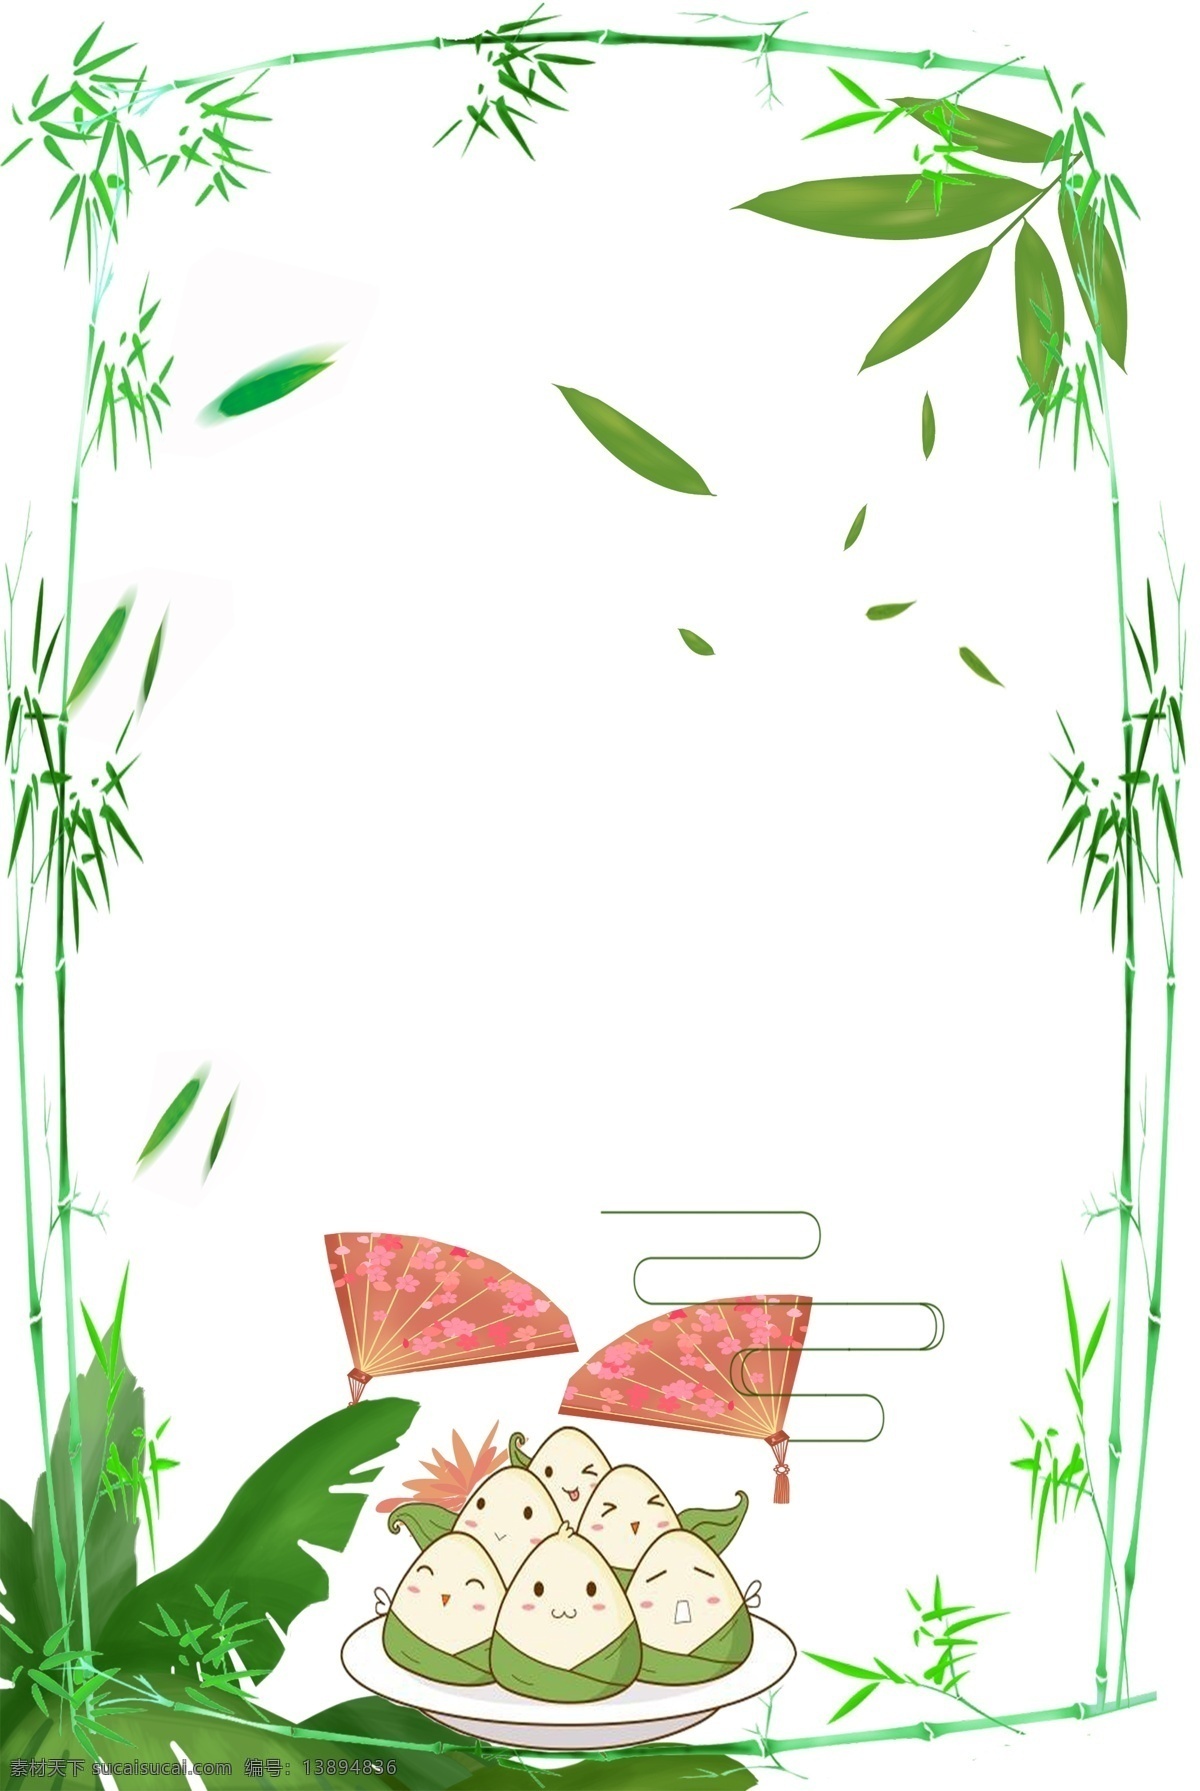 端午 粽子 海报下载 海报背景 中国风 树叶 平面背景 浅绿色 条纹